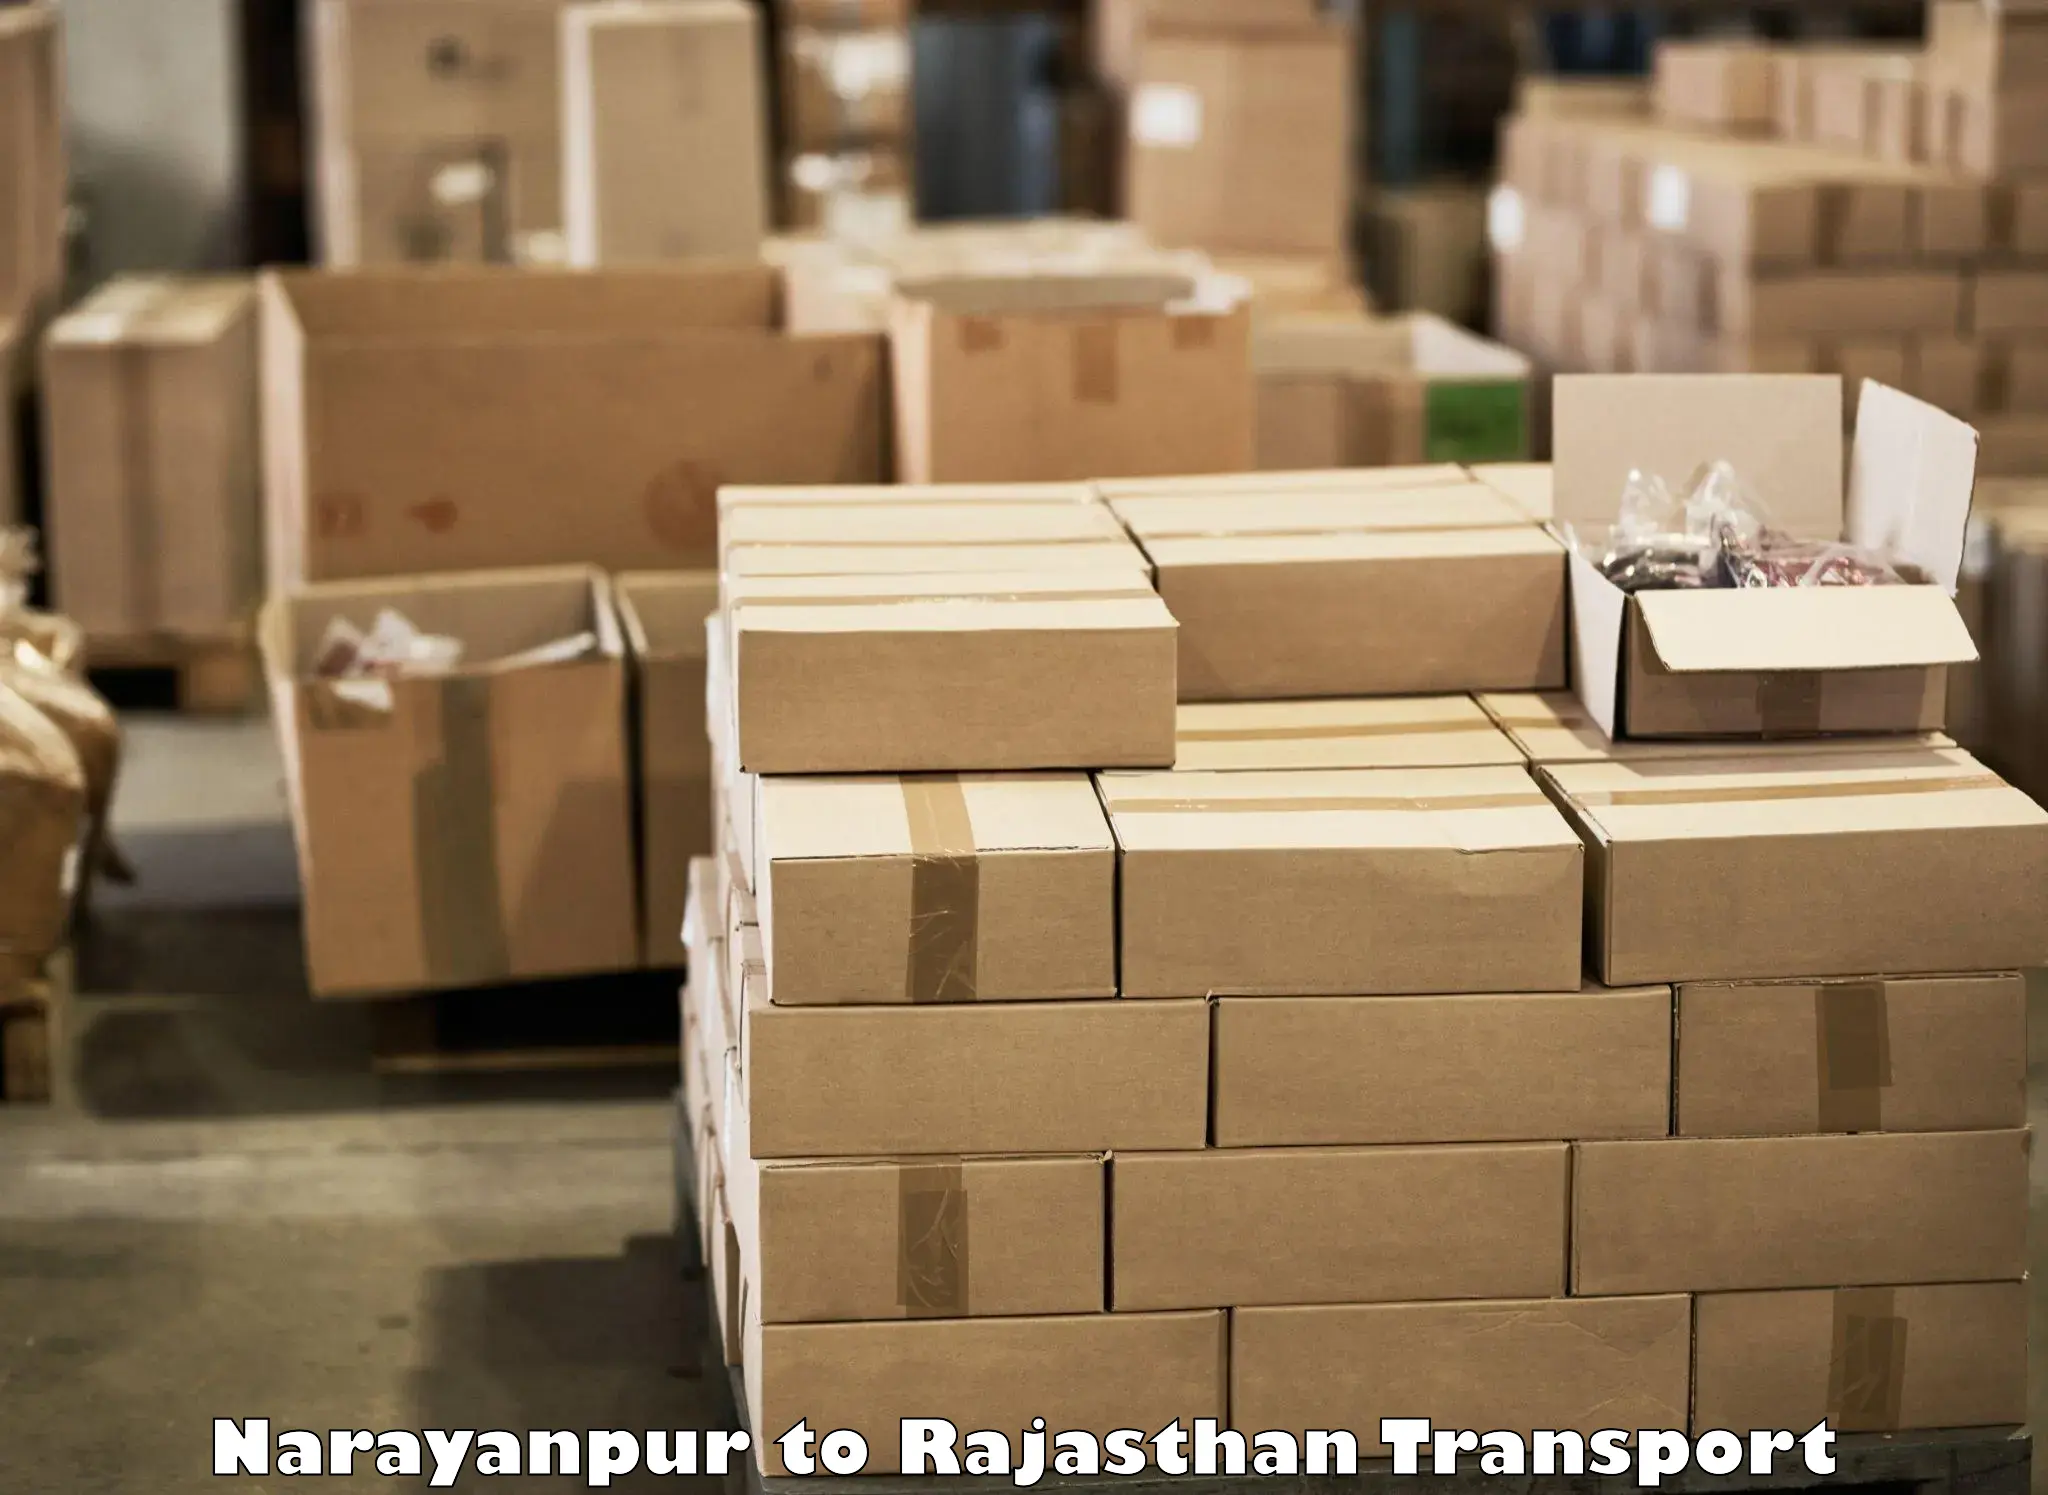 Bike shipping service Narayanpur to Viratnagar